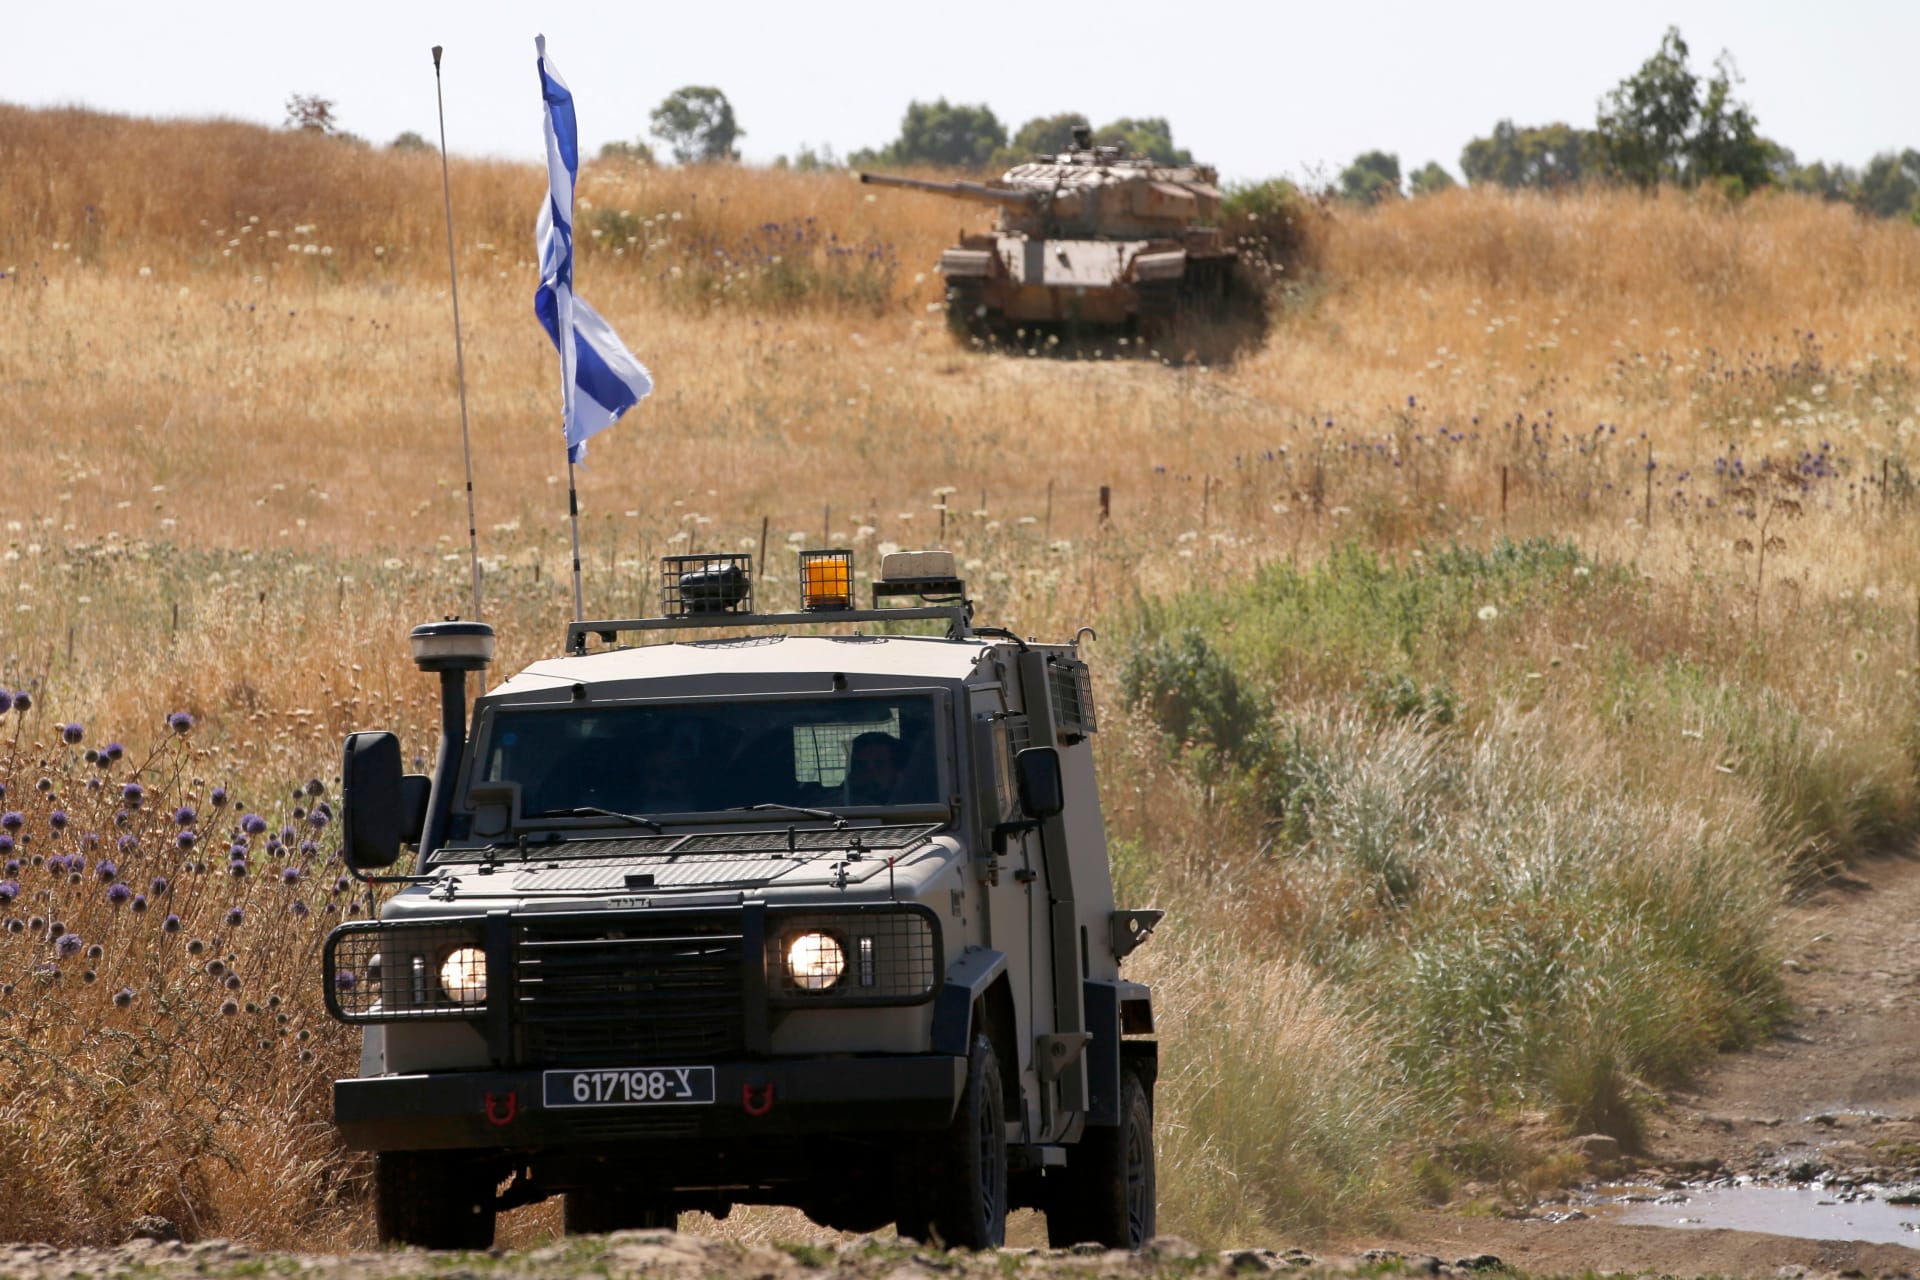 الجيش الإسرائيلي: الدرون التي تم اعتراضها يوم الأحد كانت إيرانية الصنع